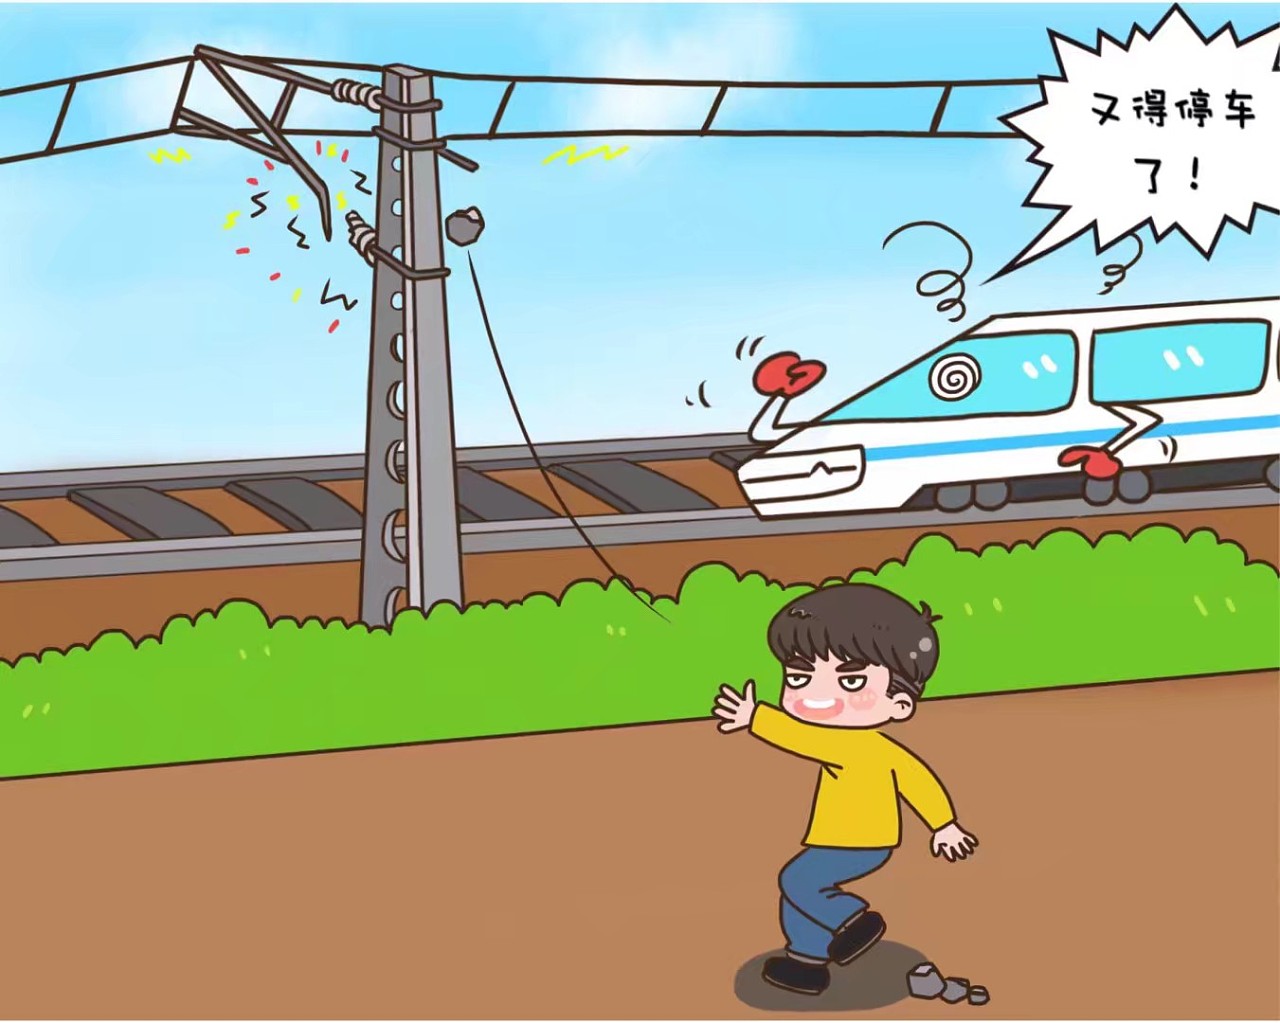 铁路供电系统路外安全宣传漫画